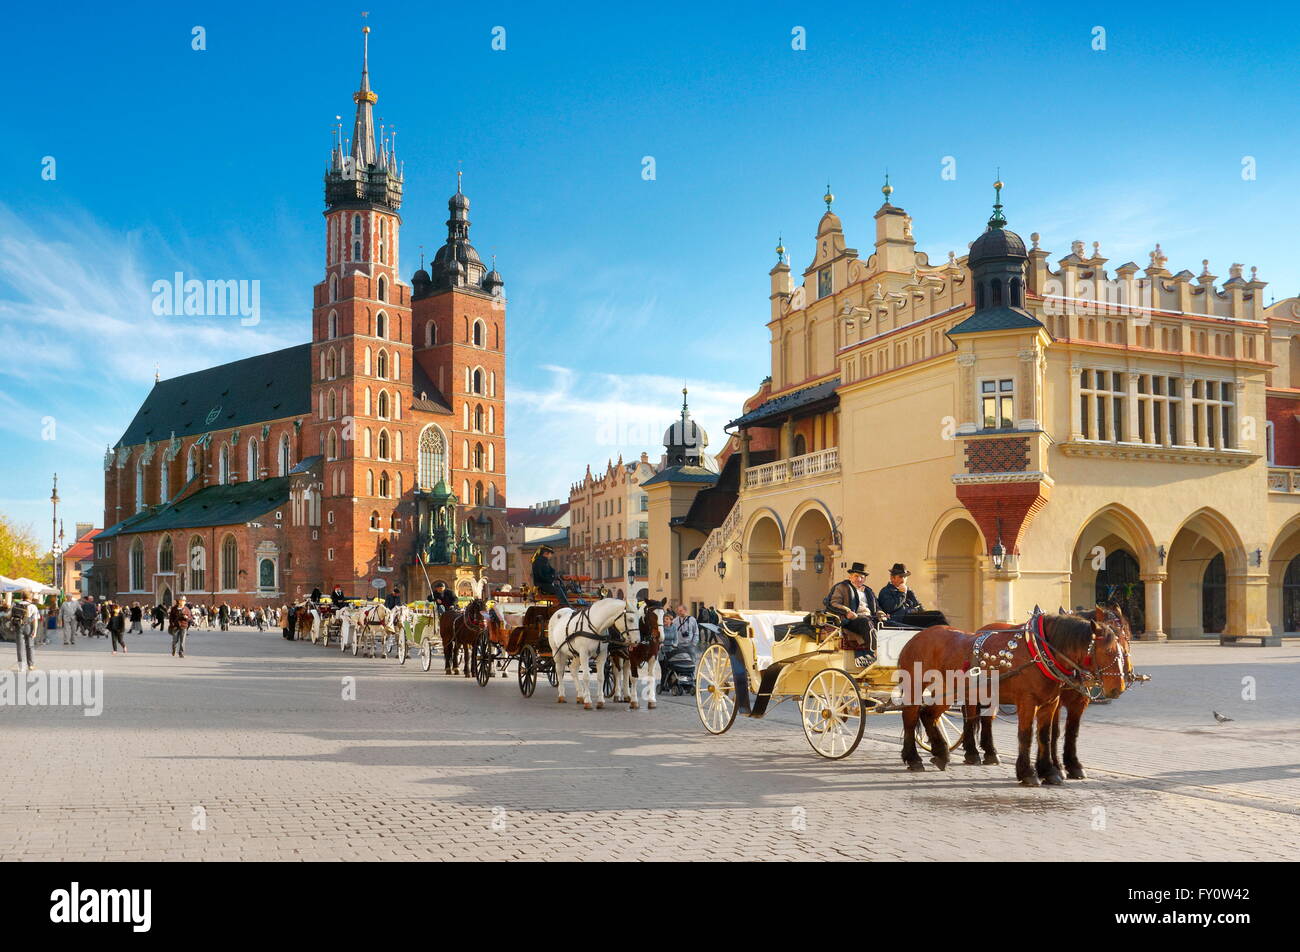 Carrozza a cavallo in attesa per i turisti, la Piazza del Mercato di Cracovia, Città Vecchia, Polonia Foto Stock